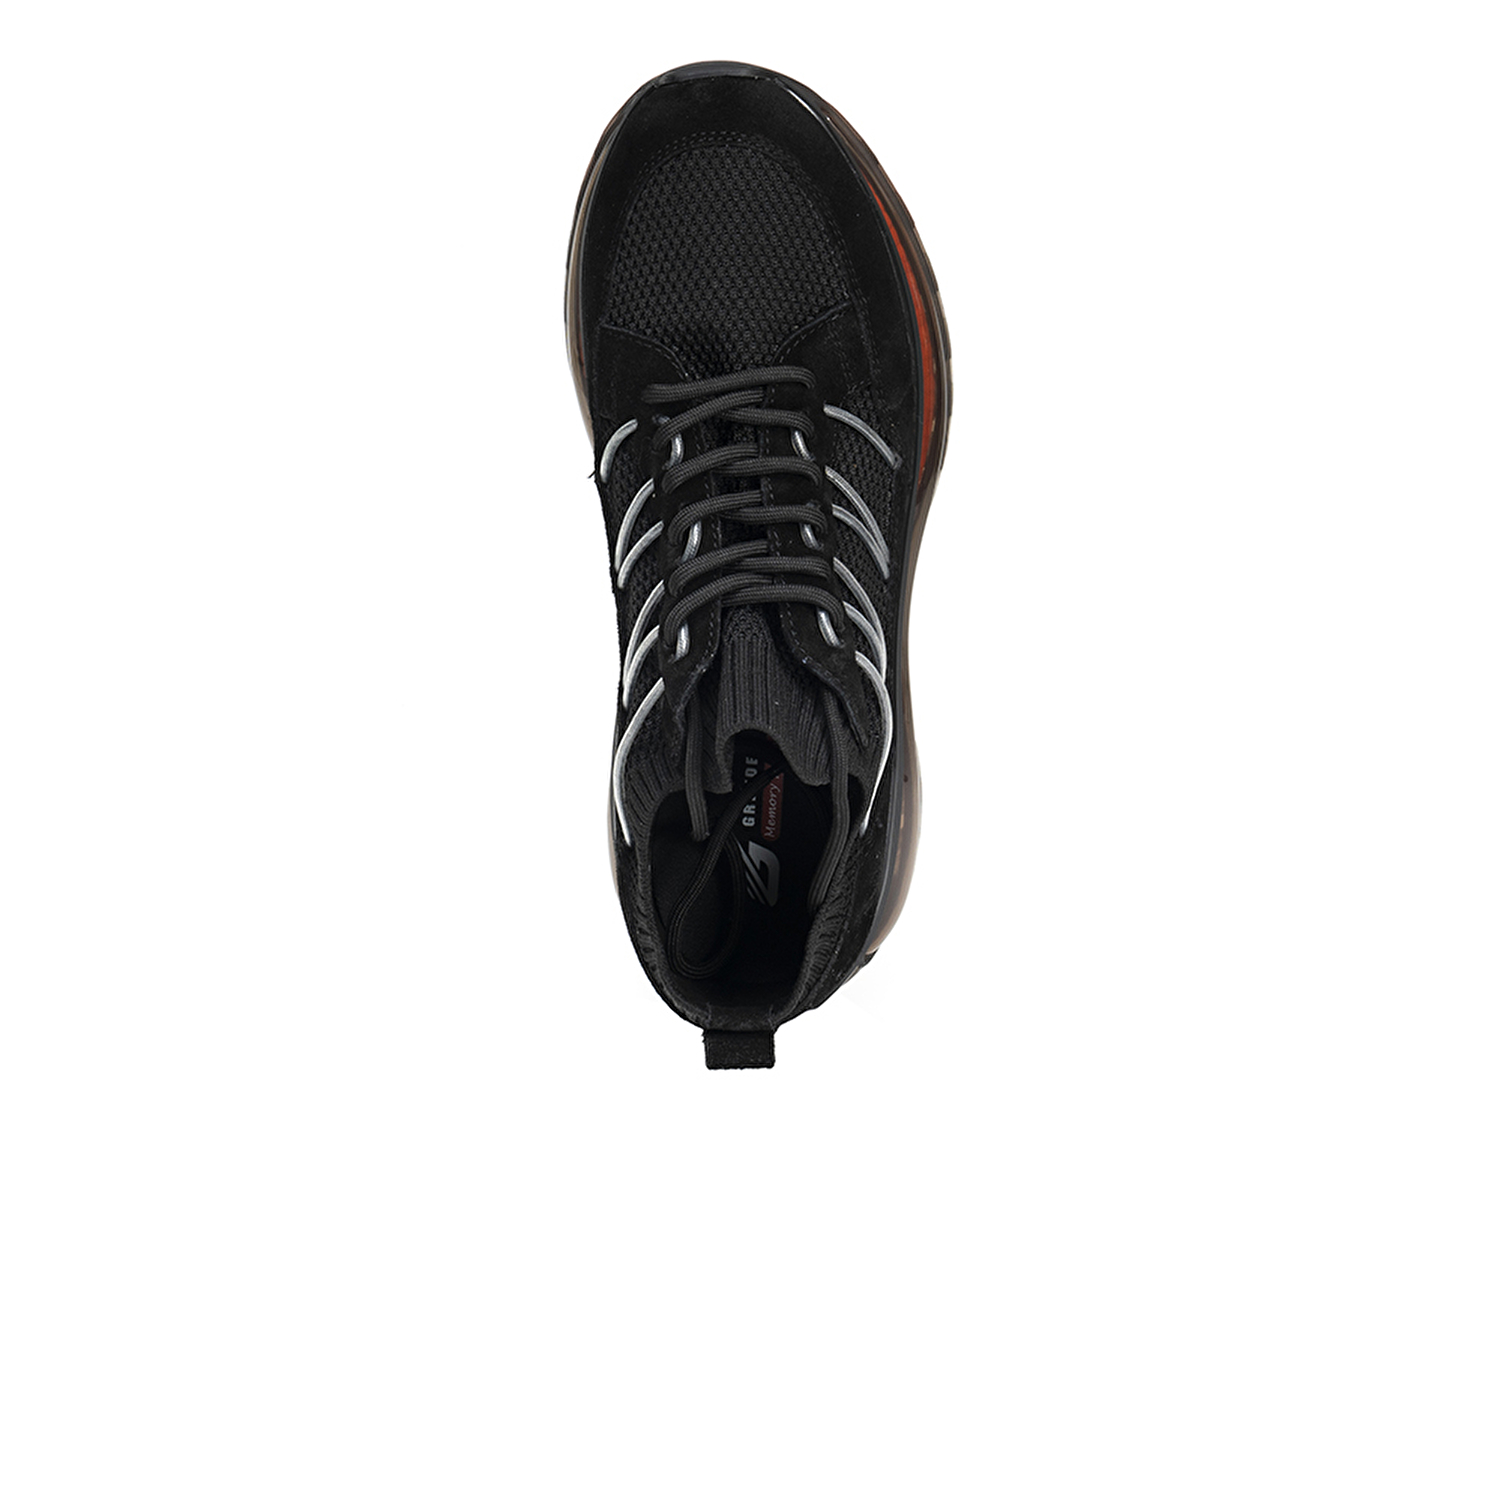 Kadın Siyah Hakiki Deri Sneaker Ayakkabı 3Y2SA32411-4